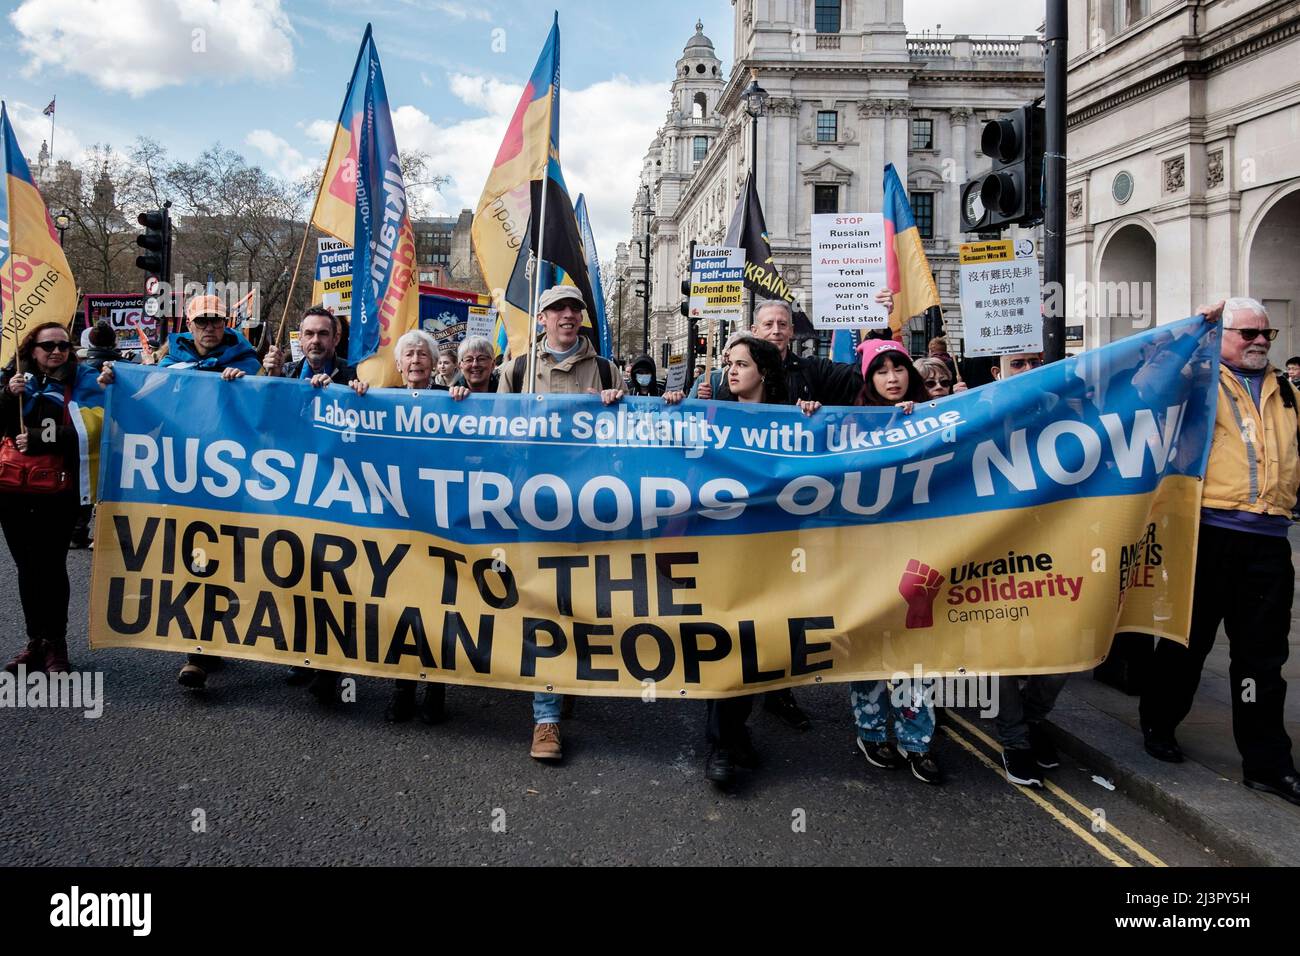 Londra, Regno Unito 9th aprile 2022. I sindacati britannici si radunano in solidarietà con l’Ucraina. Ucraina Campagna di solidarietà banner che dichiara 'truppe russe fuori ora' e 'Vittoria al popolo ucraino' portato alla testa della marcia. Foto Stock